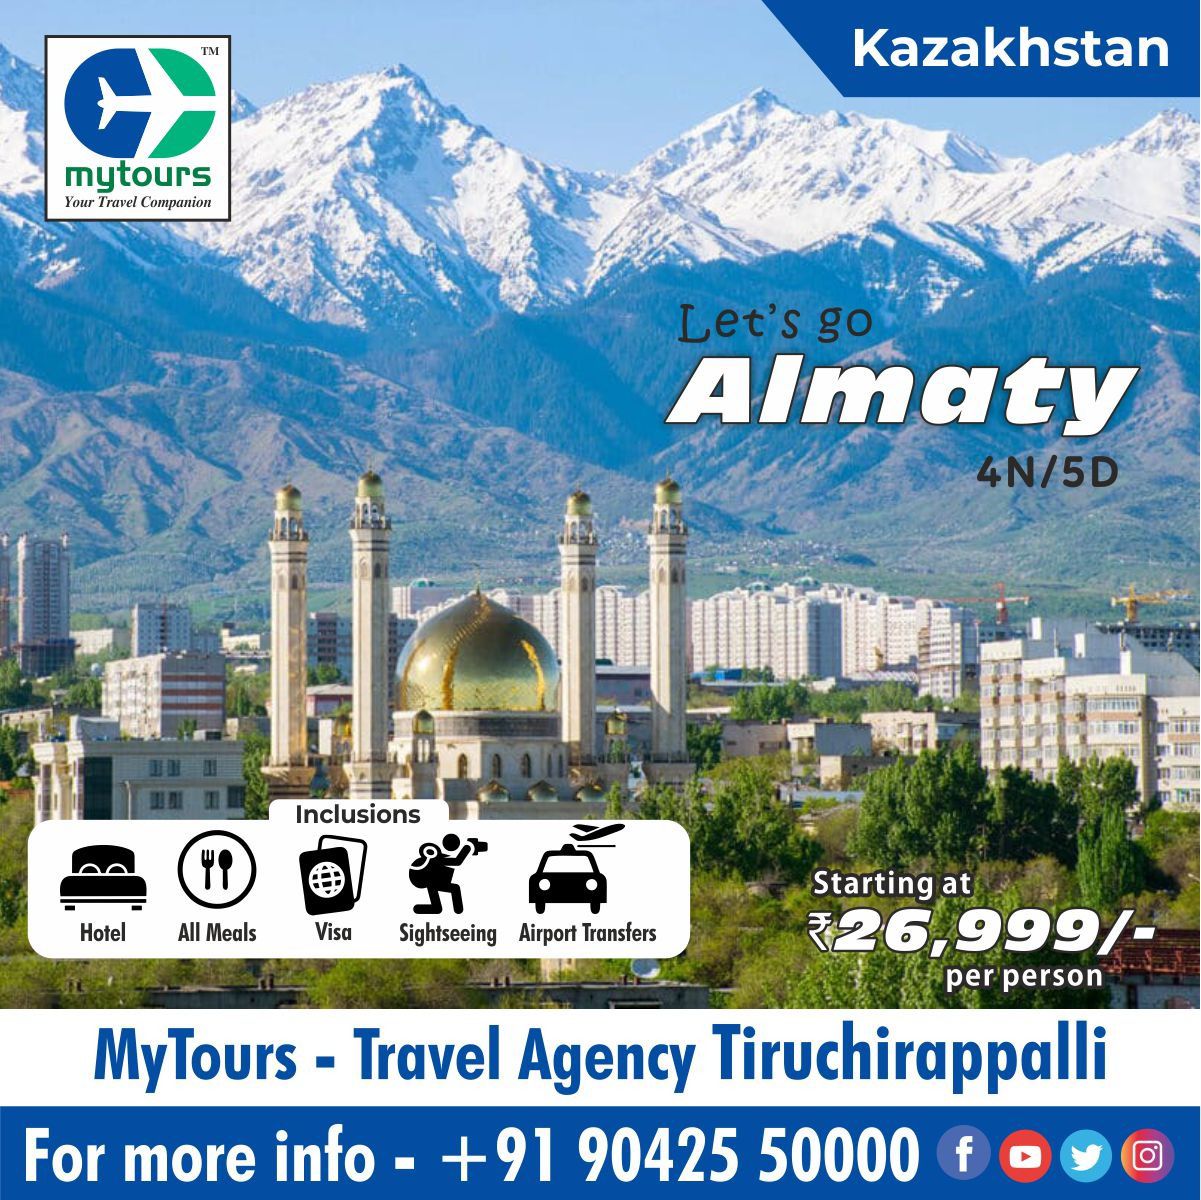 travel insurance companies in kazakhstan